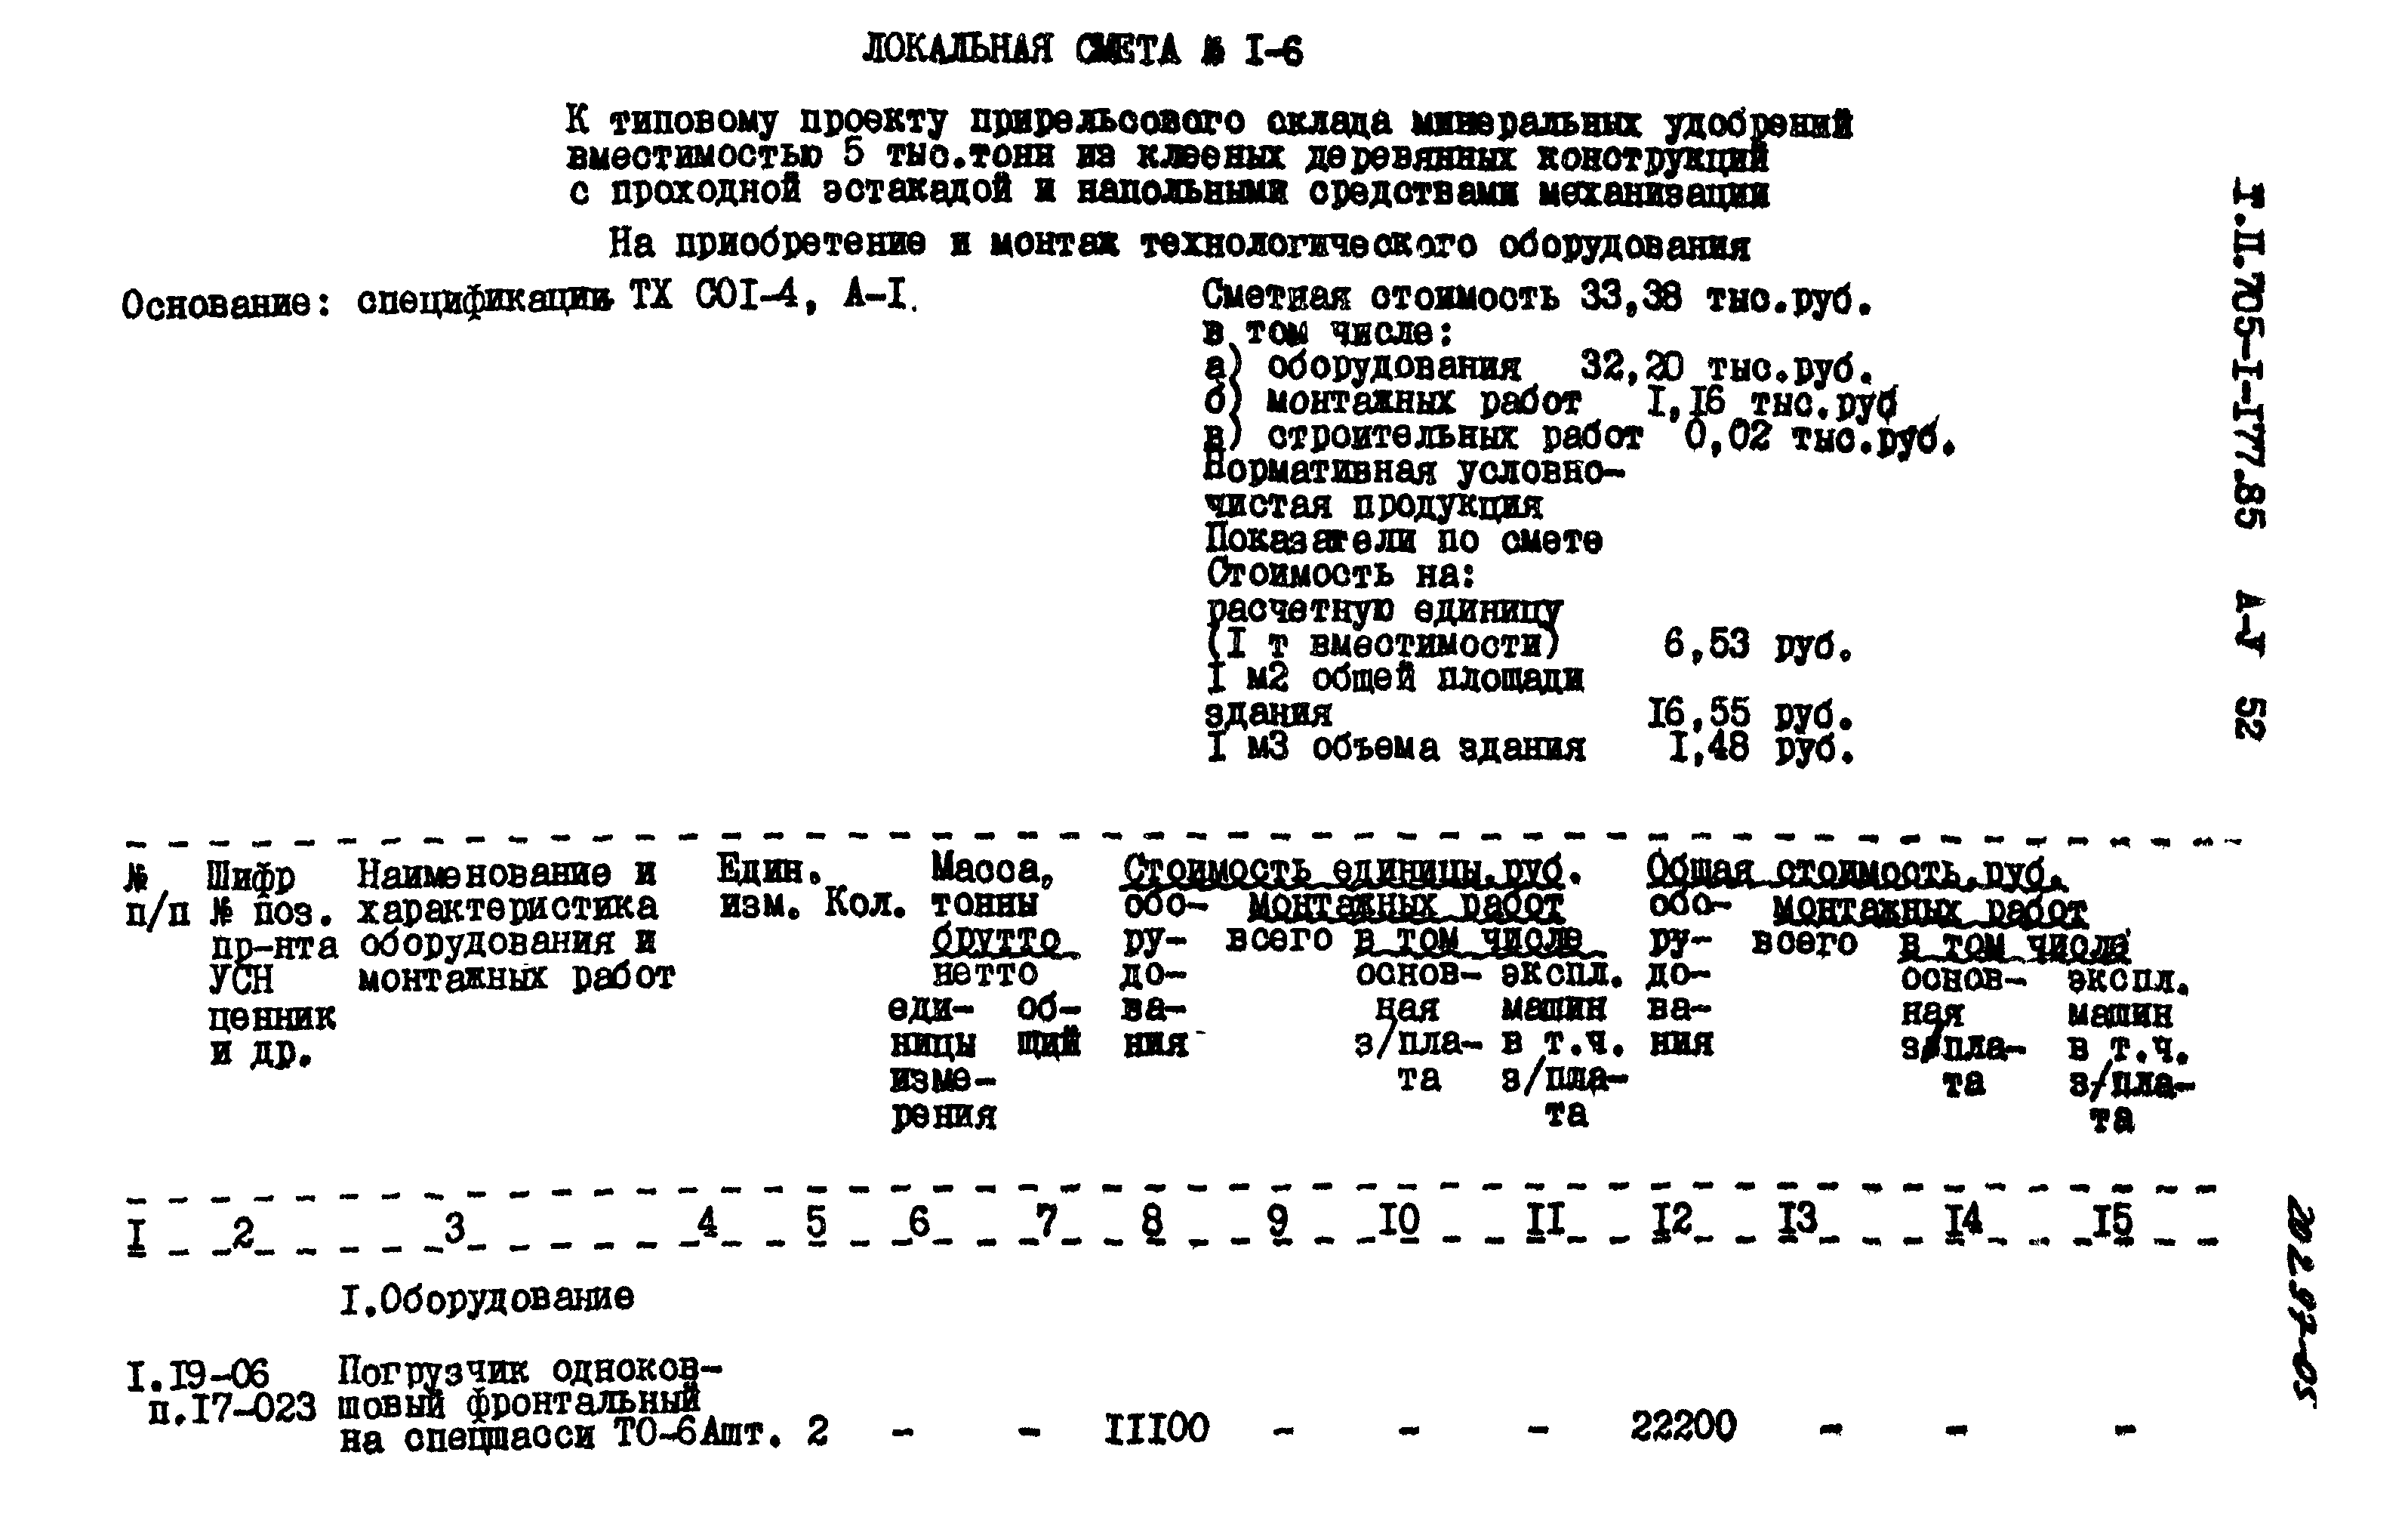 Типовой проект 705-1-177.85